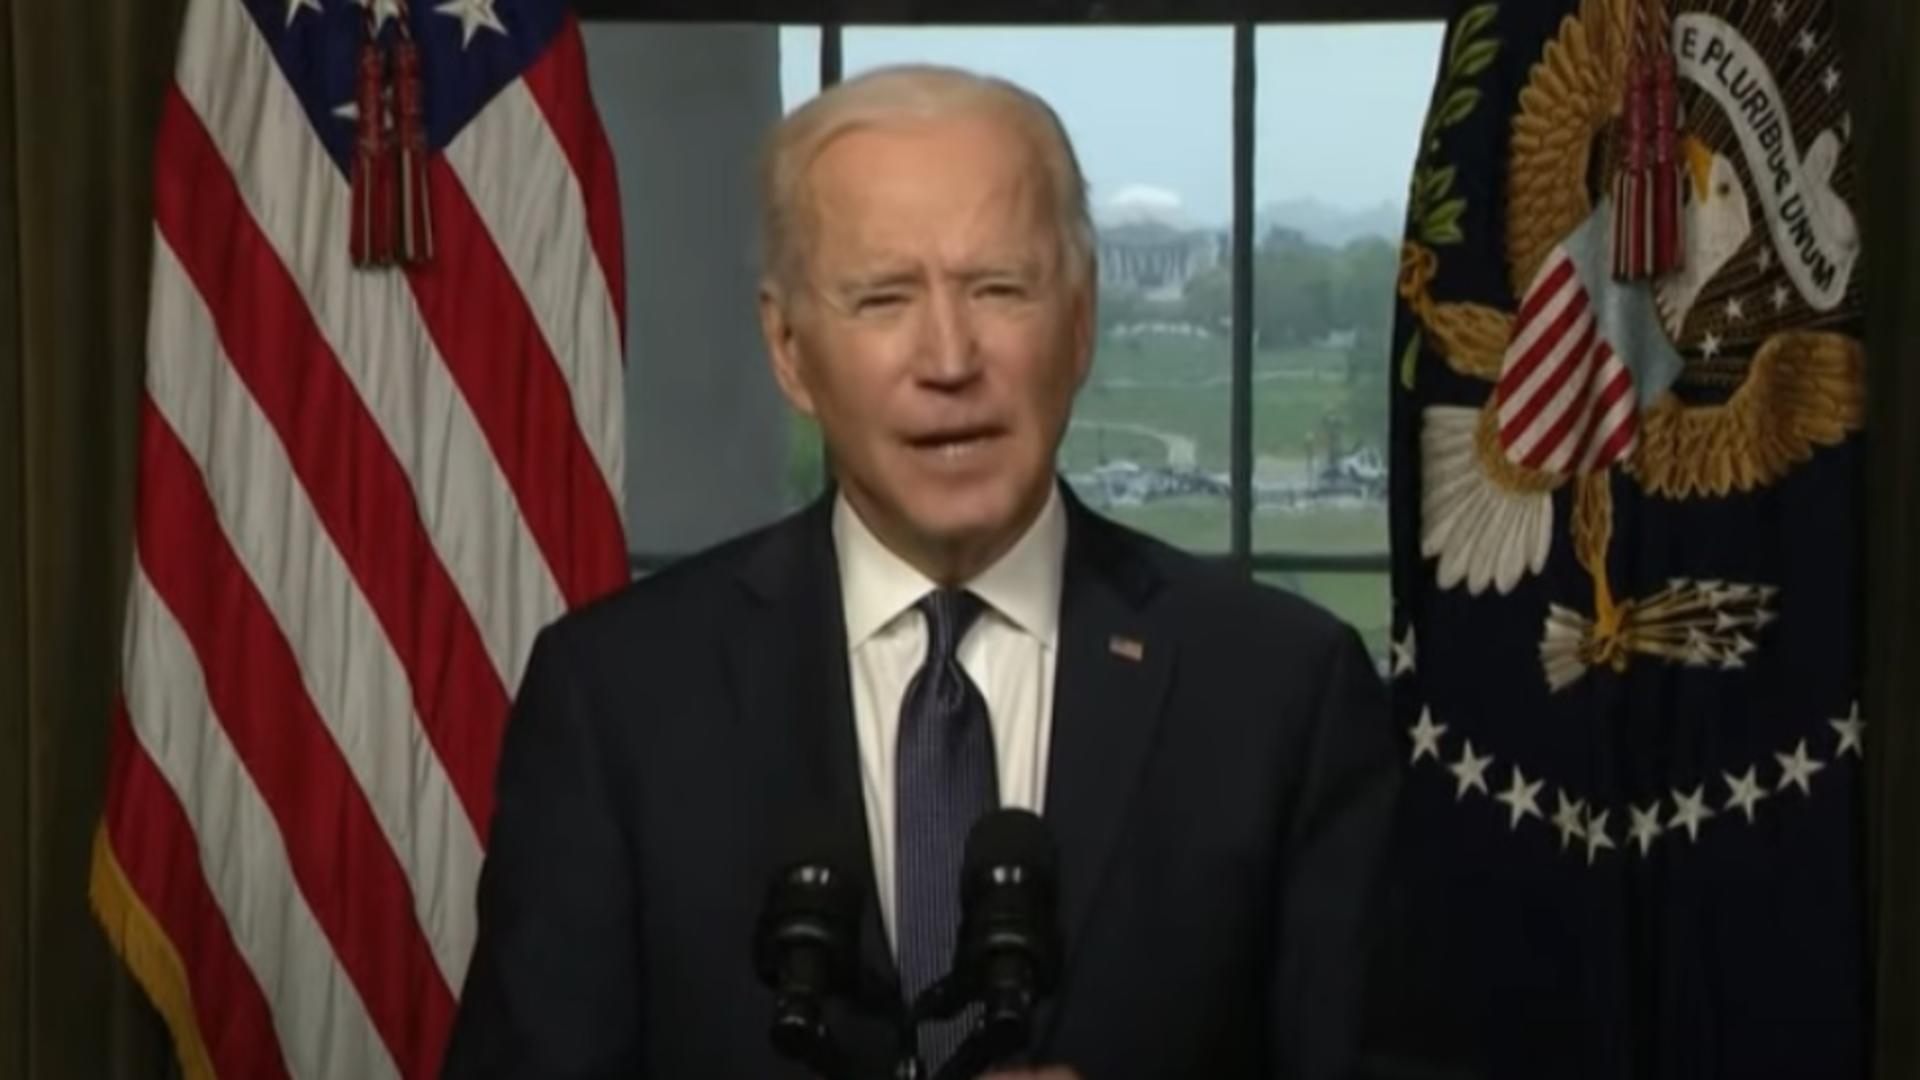 Joe Biden, anunț oficial despre retragerea trupelor americane din Afganistan înainte de 11 septembrie, la 20 de ani de la atentatele teroriste